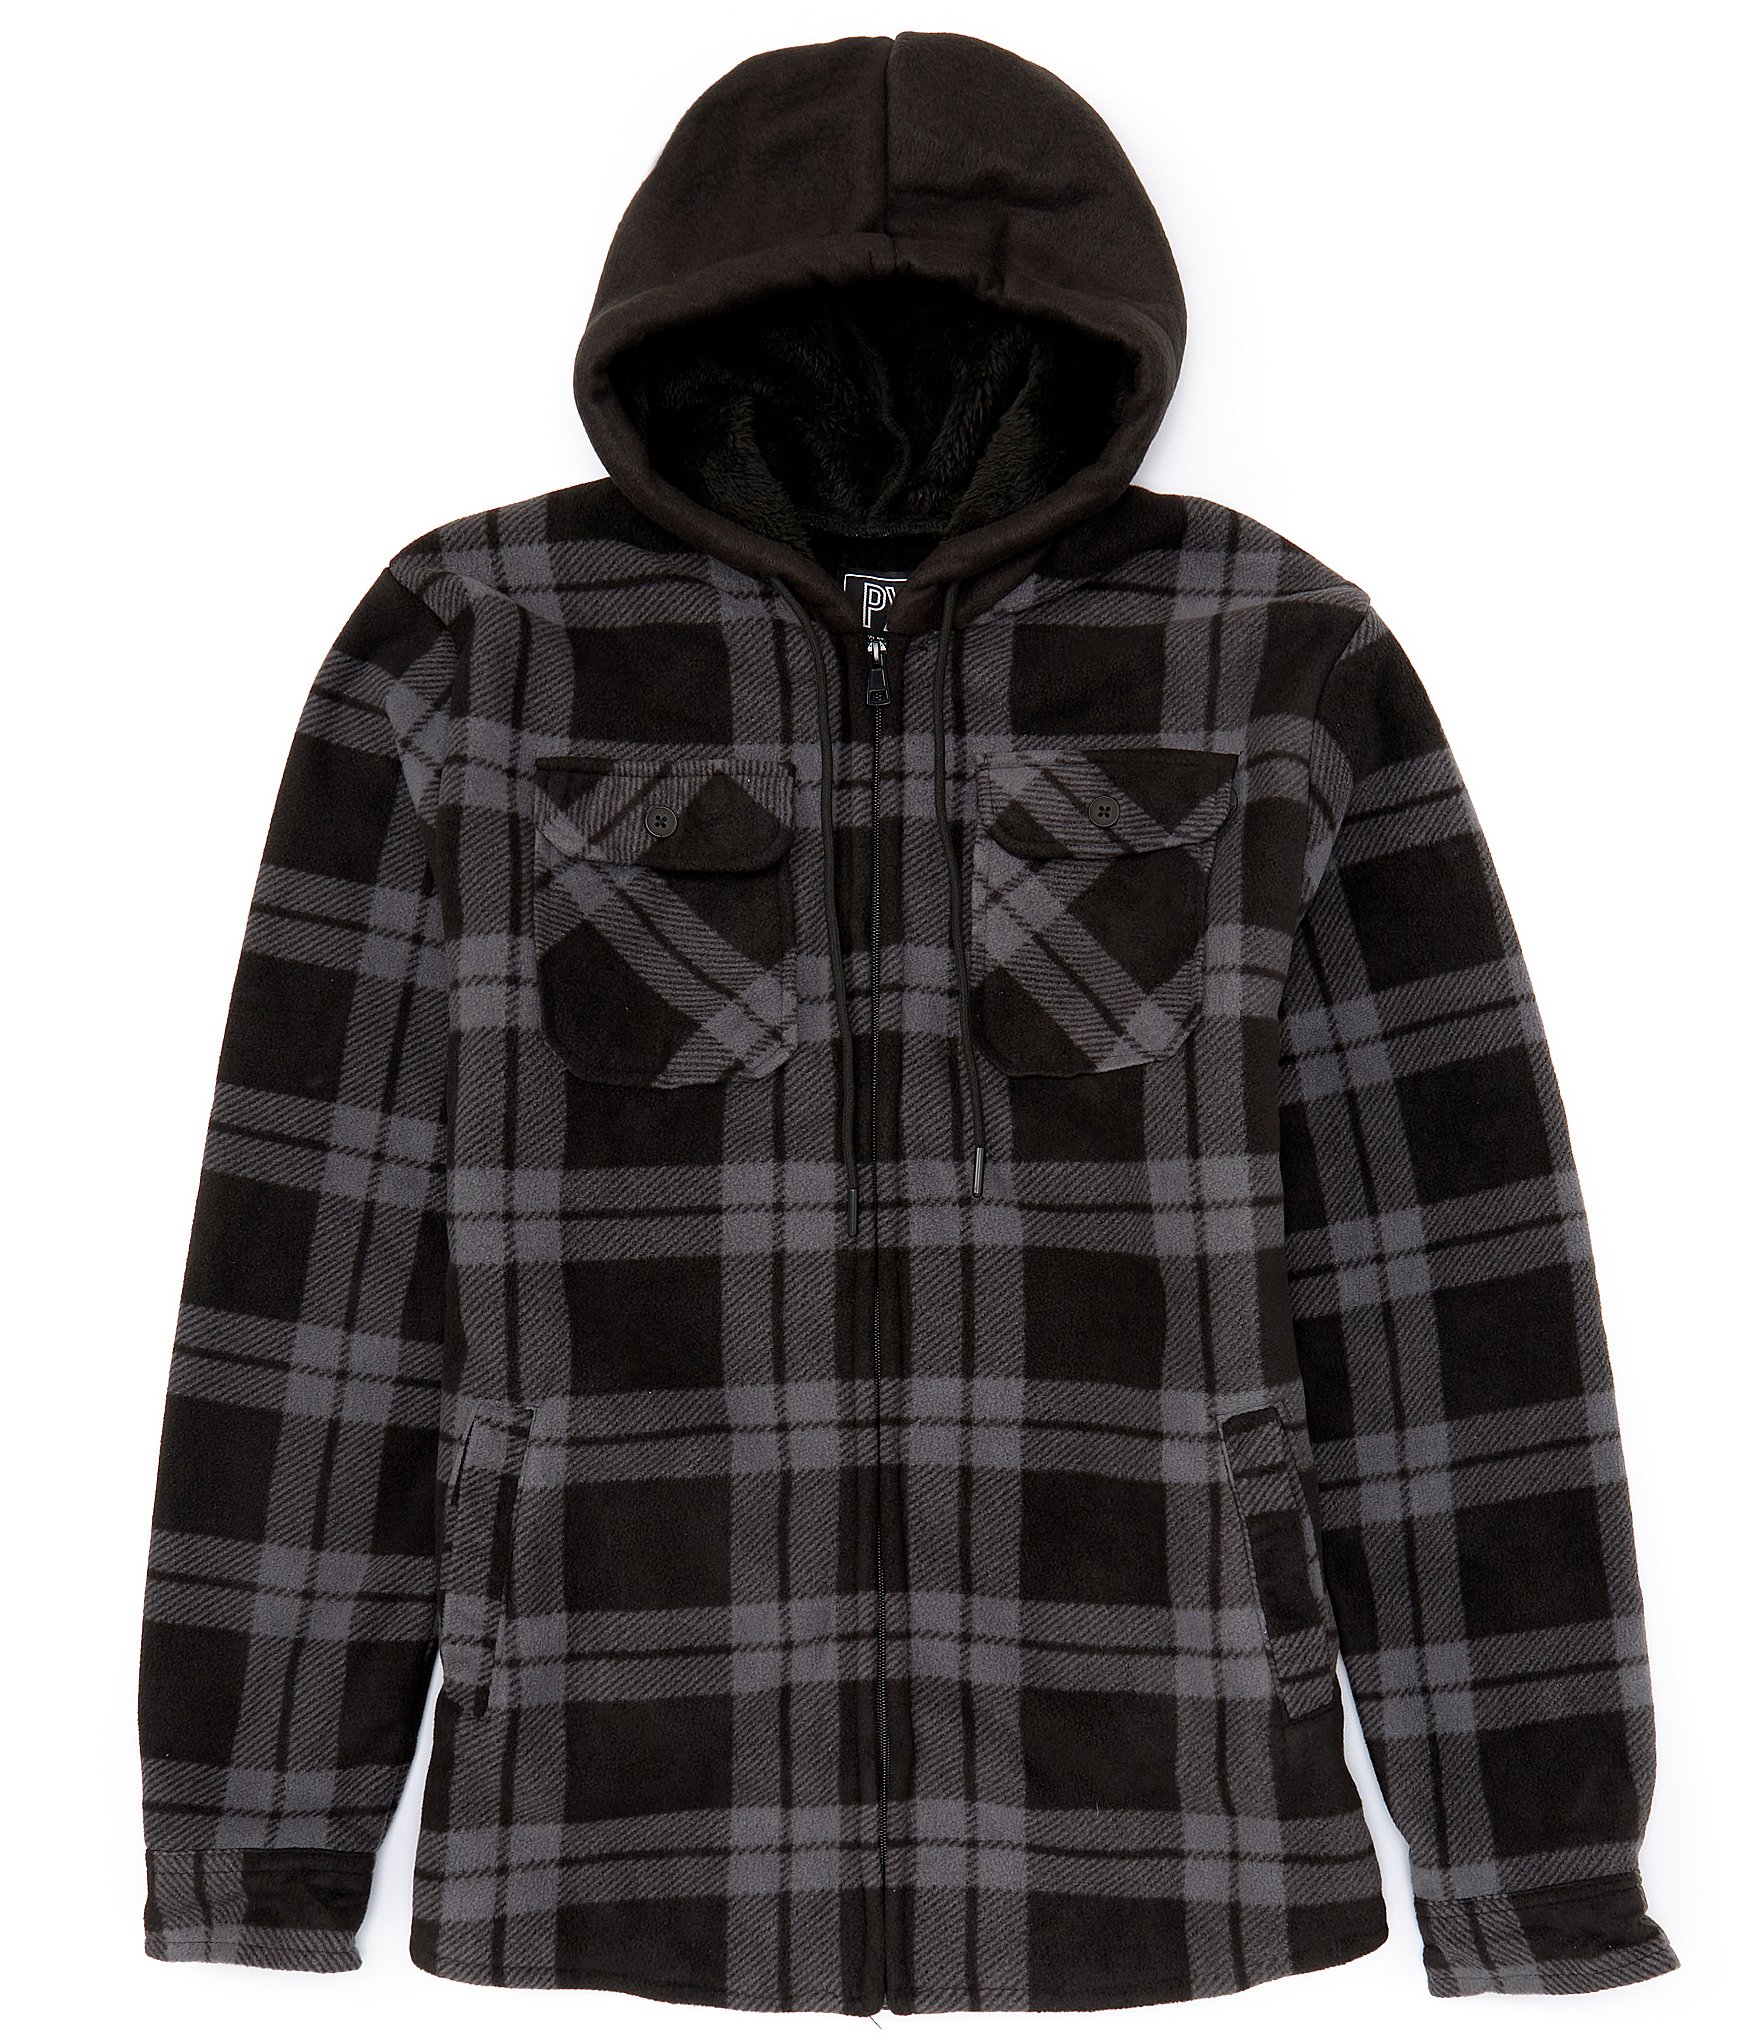 PX Clothing Sherpa Fleece Full Zip Hooded Jacket | Dillard's